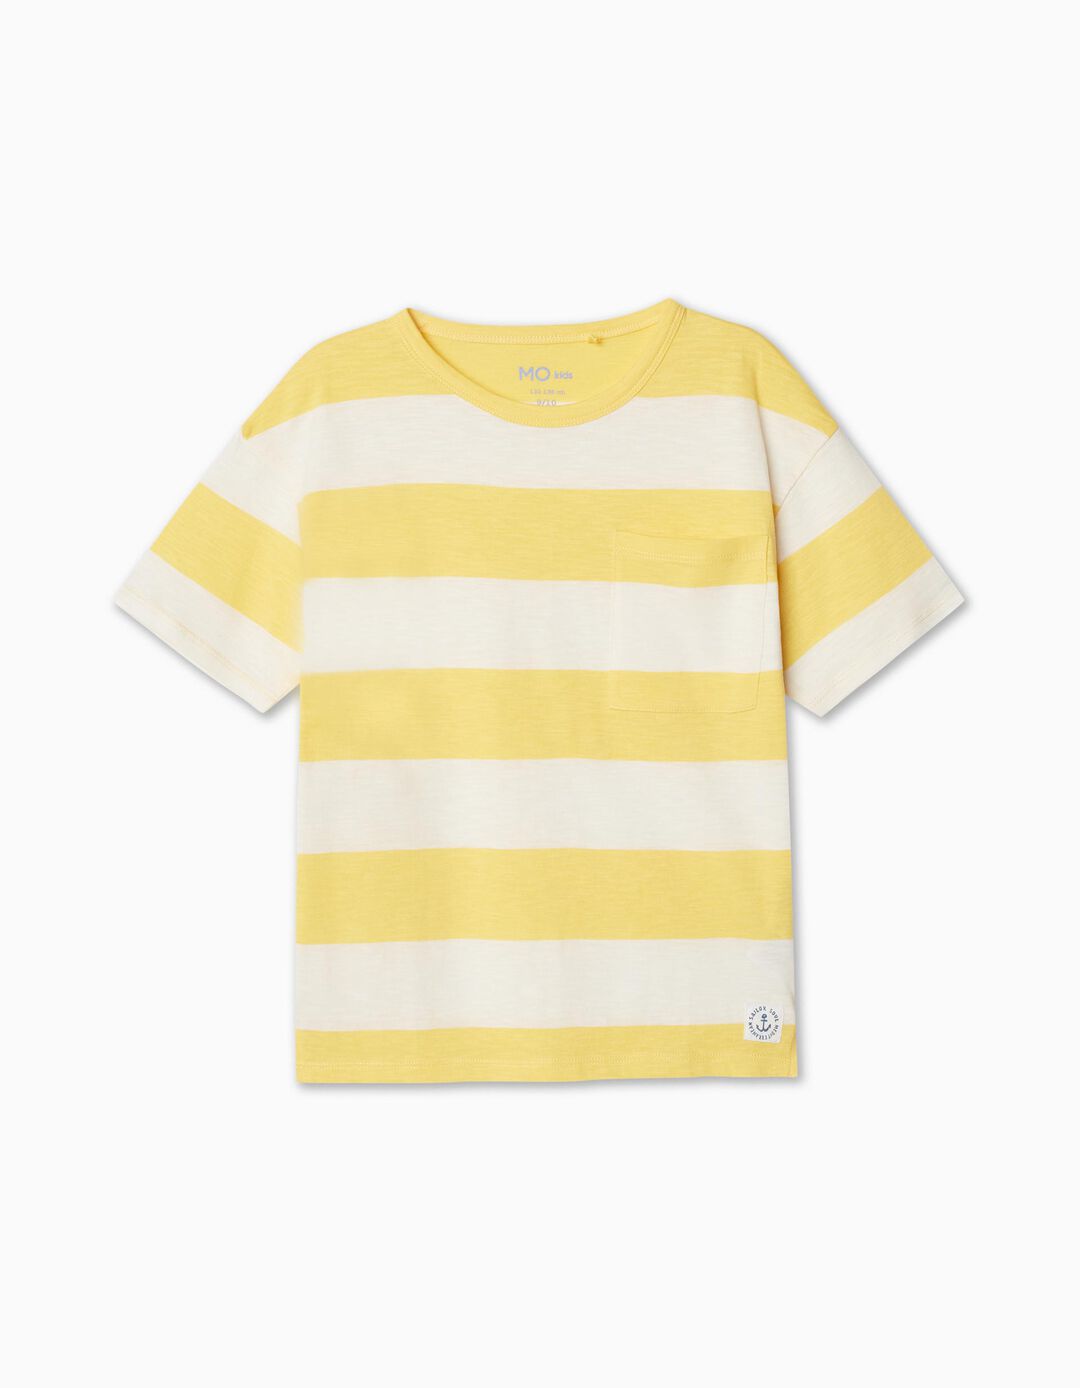 T-shirt Riscas, Menino, Amarelo